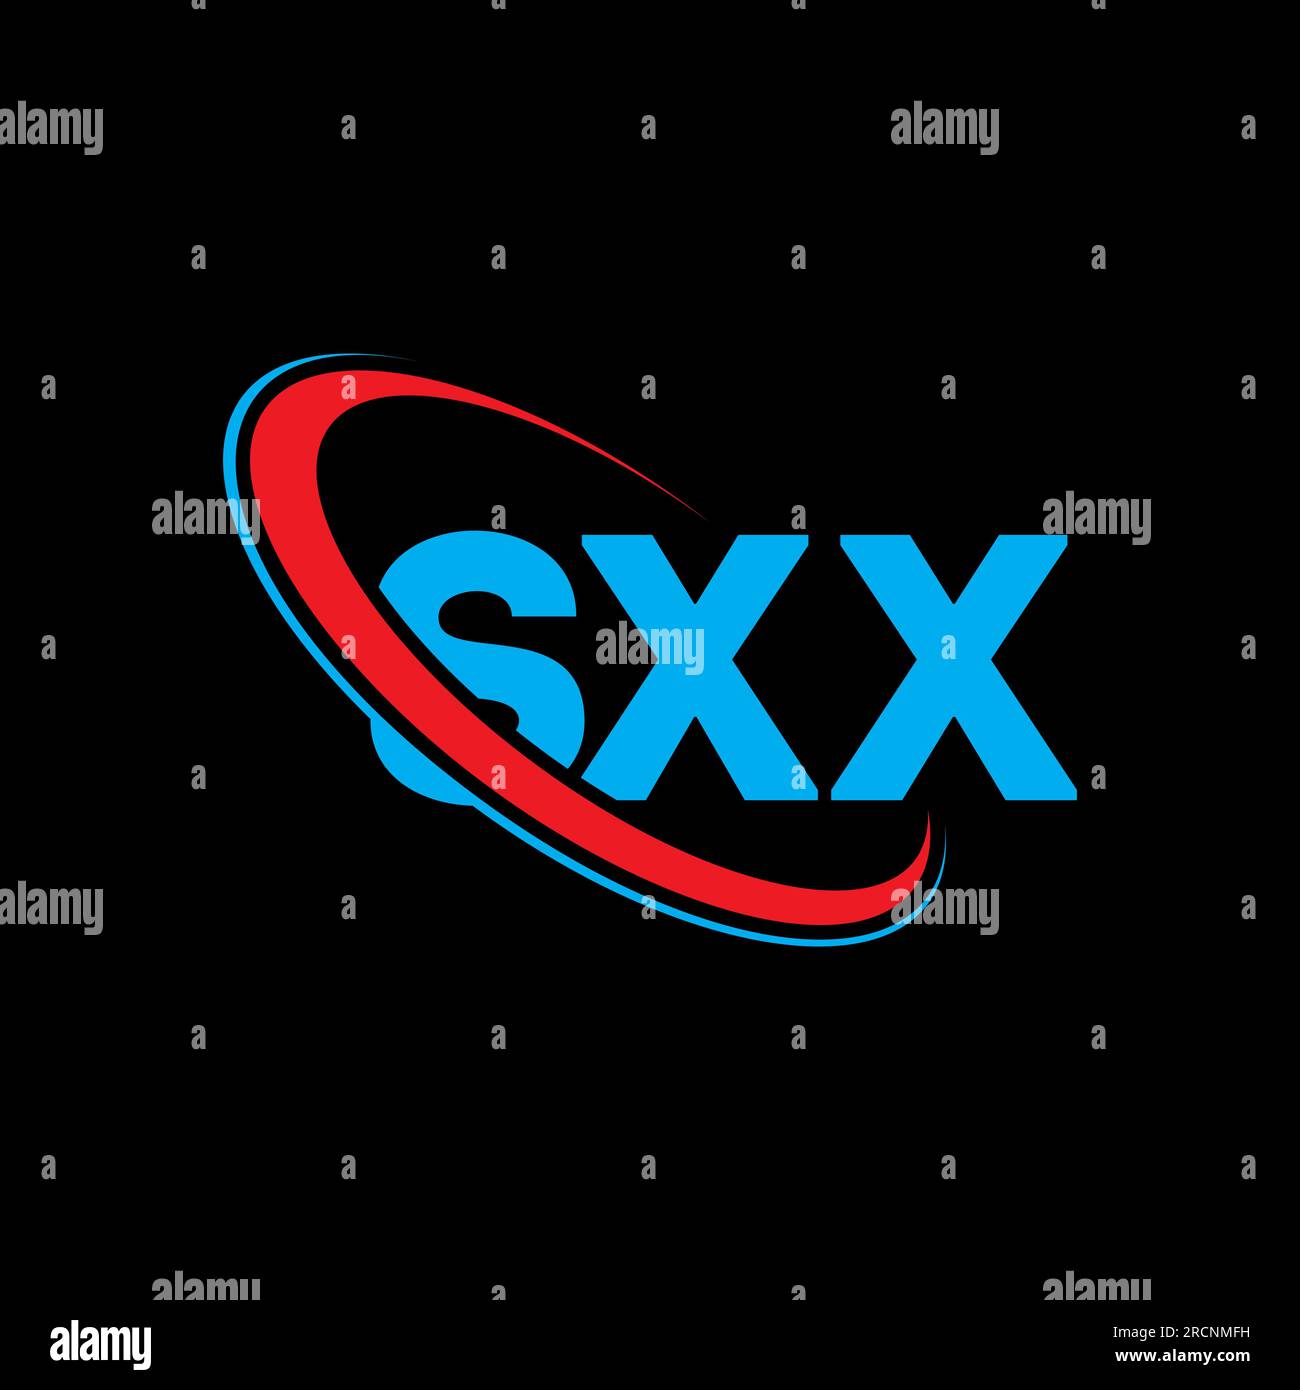 Sxx image